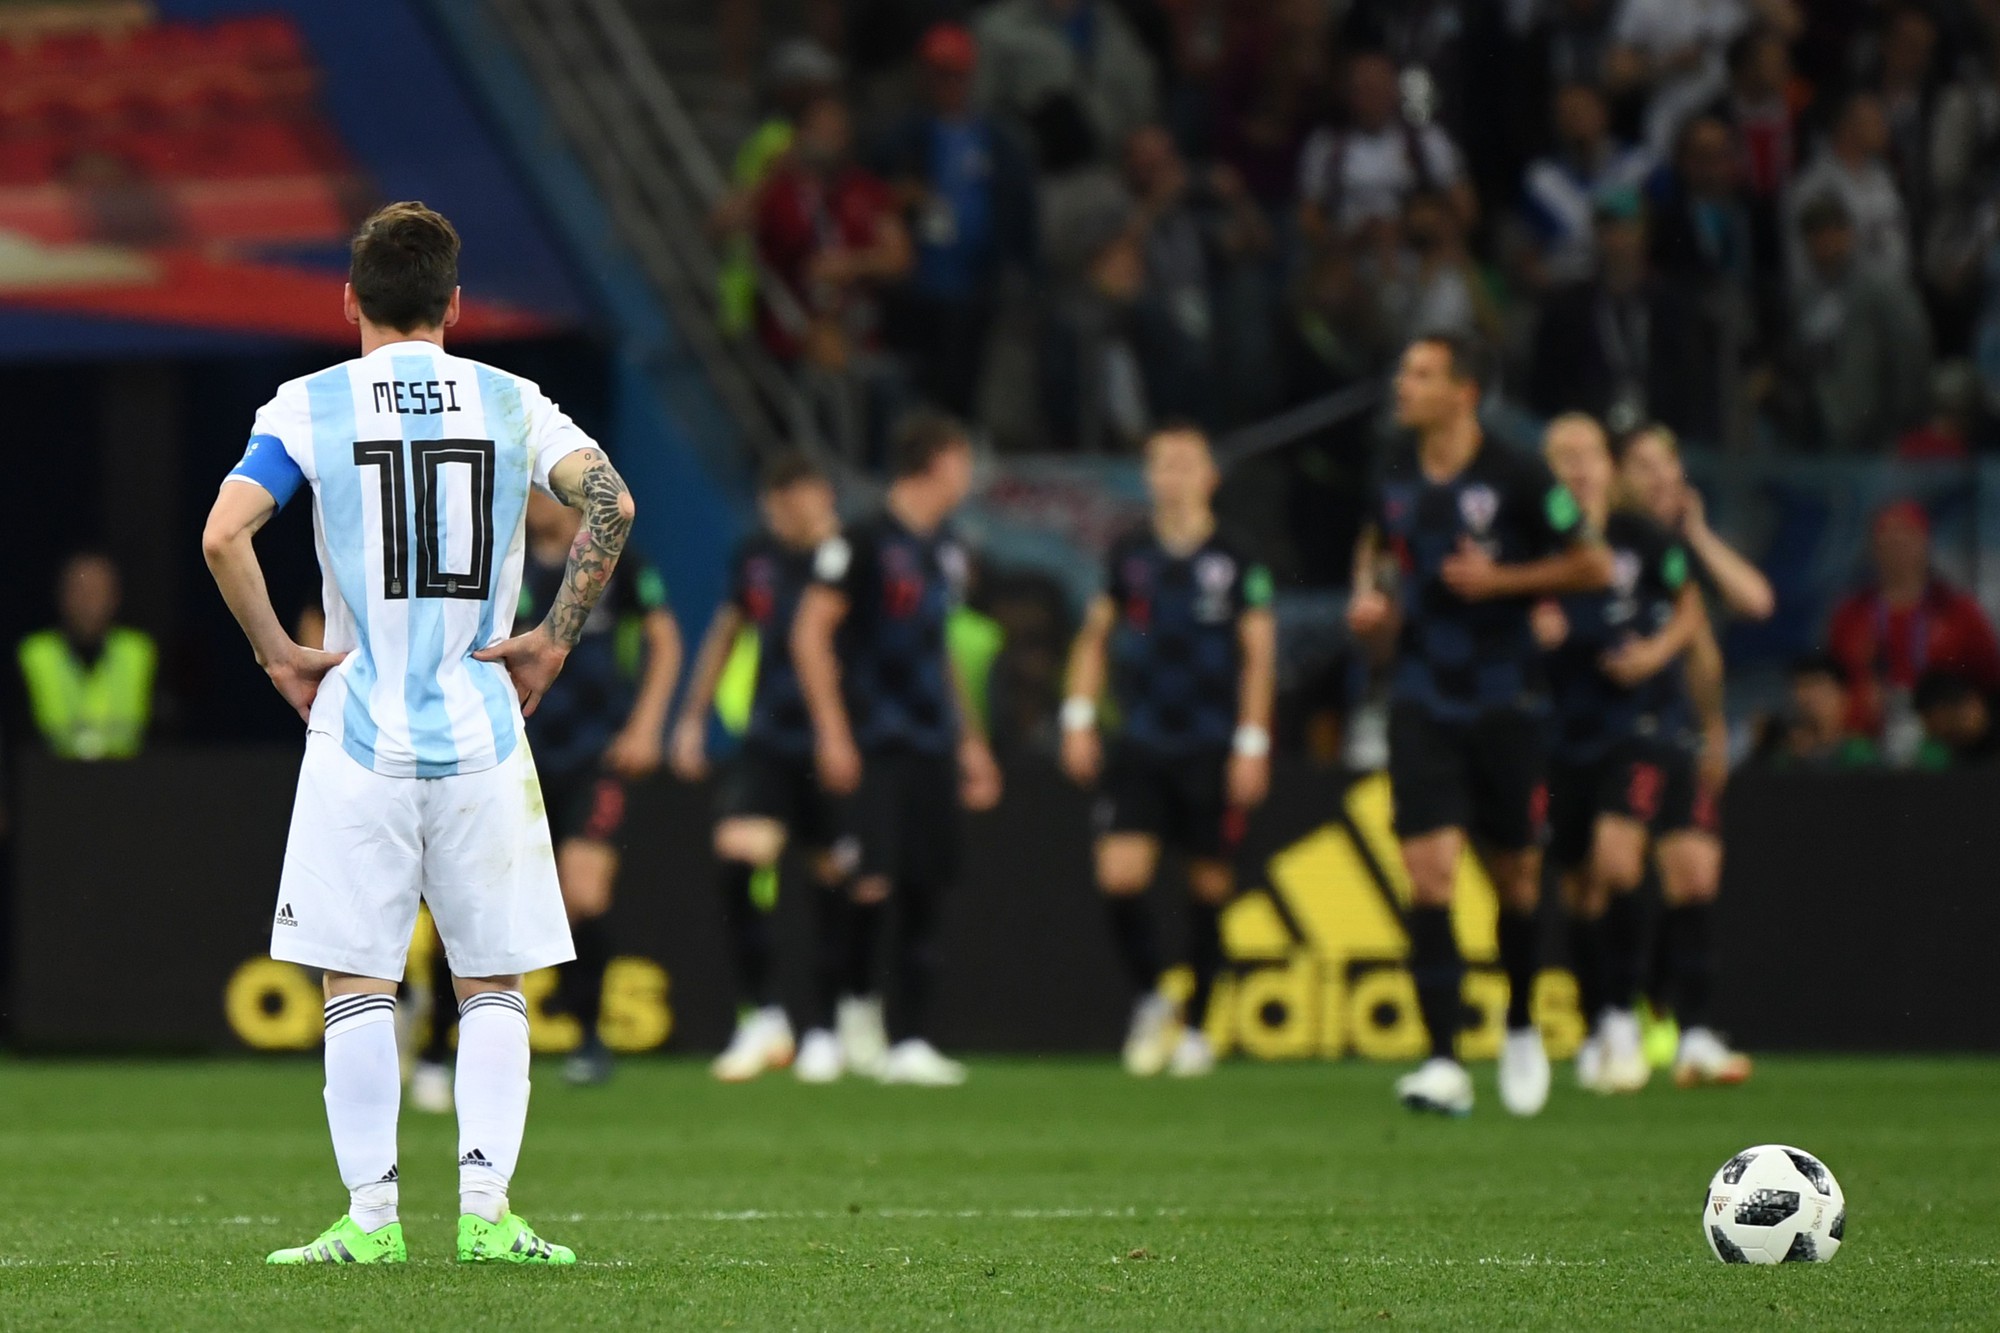 Fan cuồng Messi tự sát sau trận thua của Argentina? - Ảnh 2.